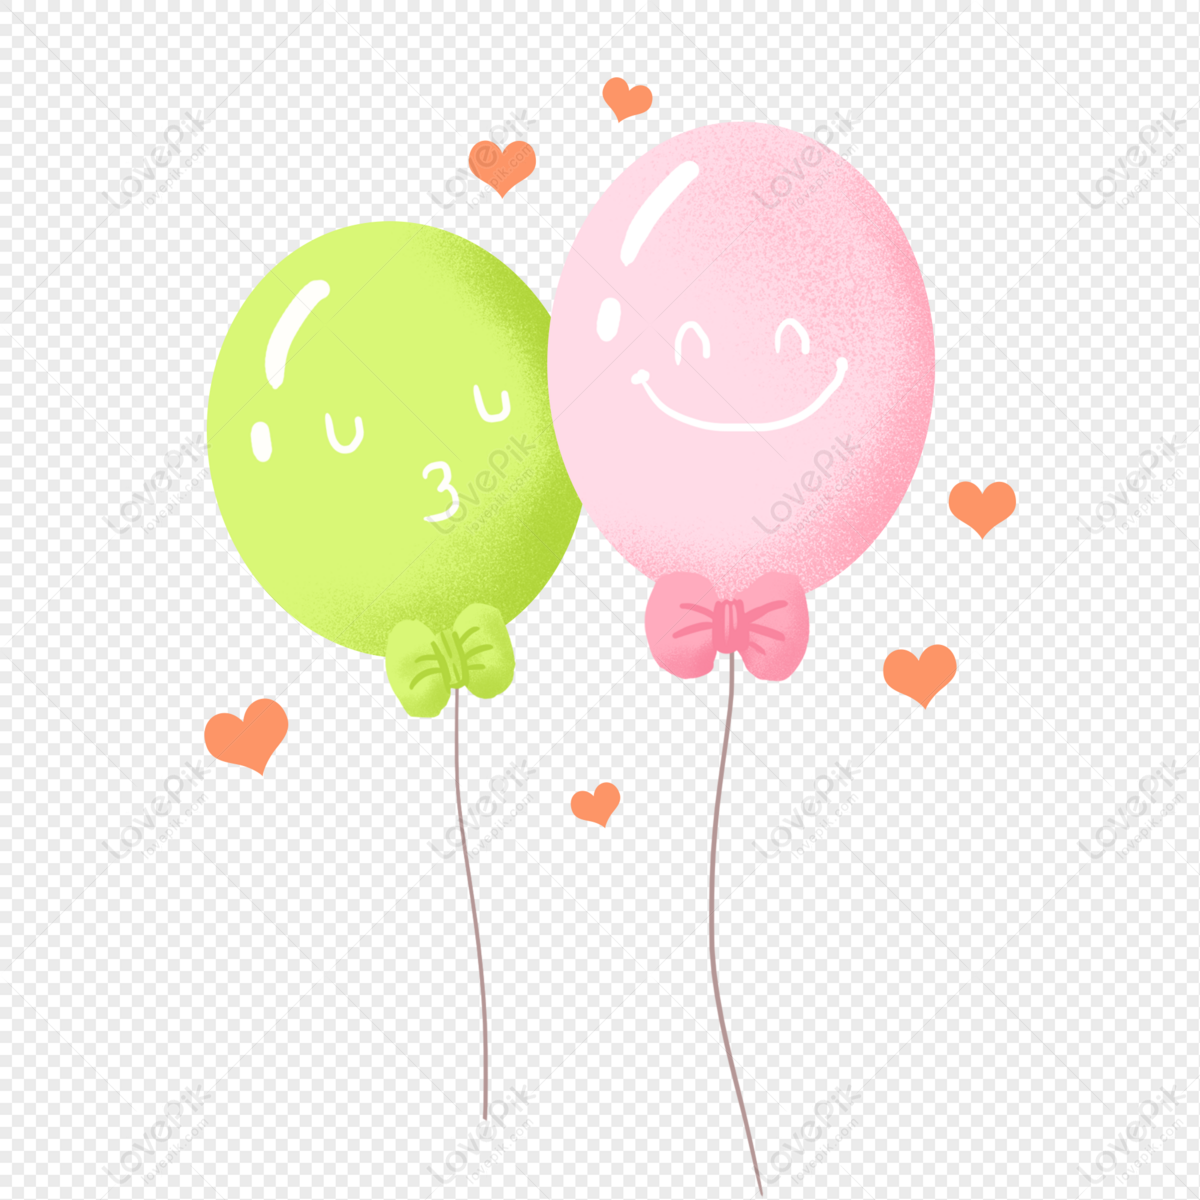 Chúng tôi xin giới thiệu đến bạn những chiếc balloon dễ thương nhất mà bạn từng thấy. Chúng là món quà hoàn hảo cho các buổi tiệc, sự kiện hoặc chỉ để trang trí phòng ngủ của bạn. Hãy tới đây để xem chi tiết về các mẫu thiết kế và tìm một chiếc balloon phù hợp với sở thích của bạn.